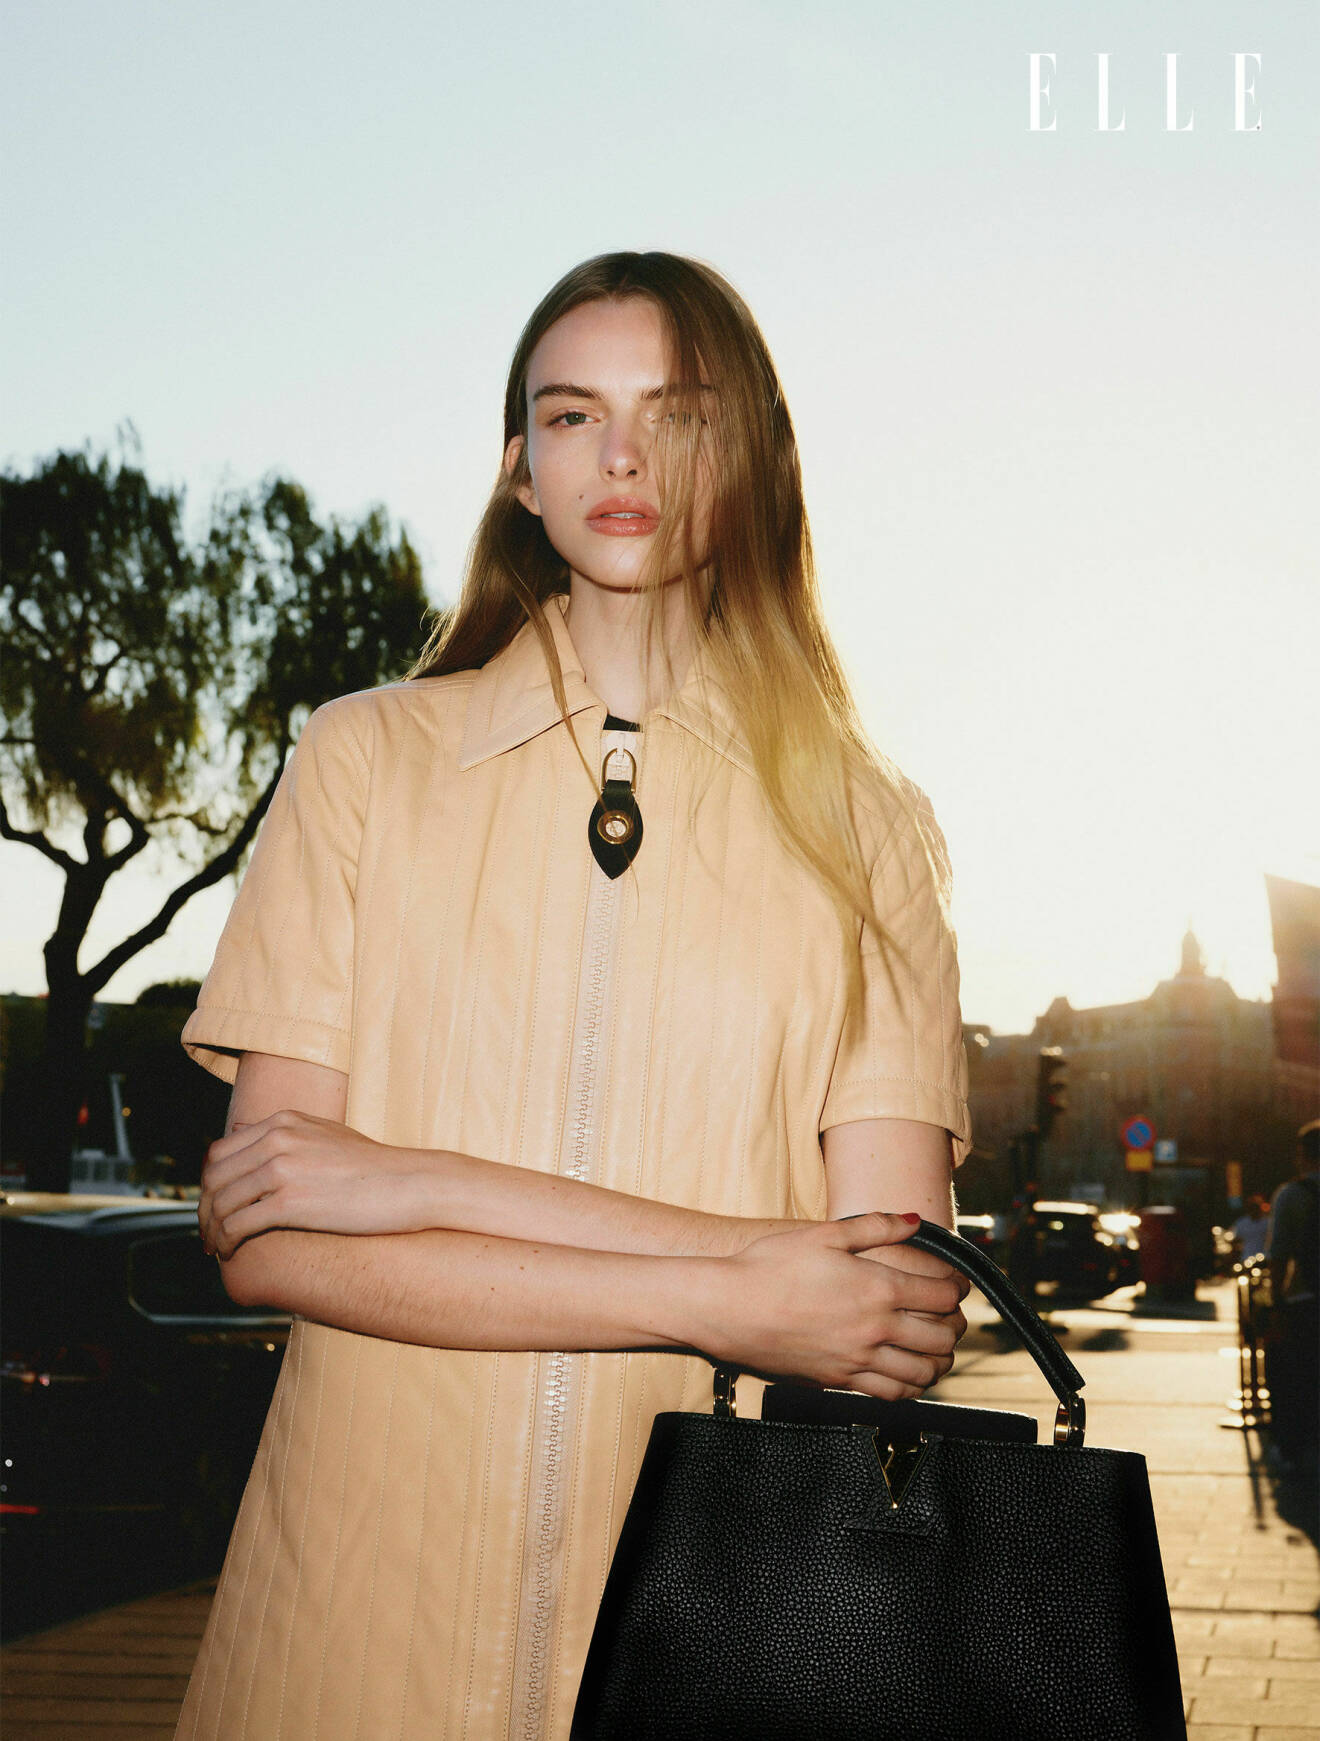 Fotomodellen har på sig en beige klänning och har en svart väska på armen, båda från Louis Vuitton.